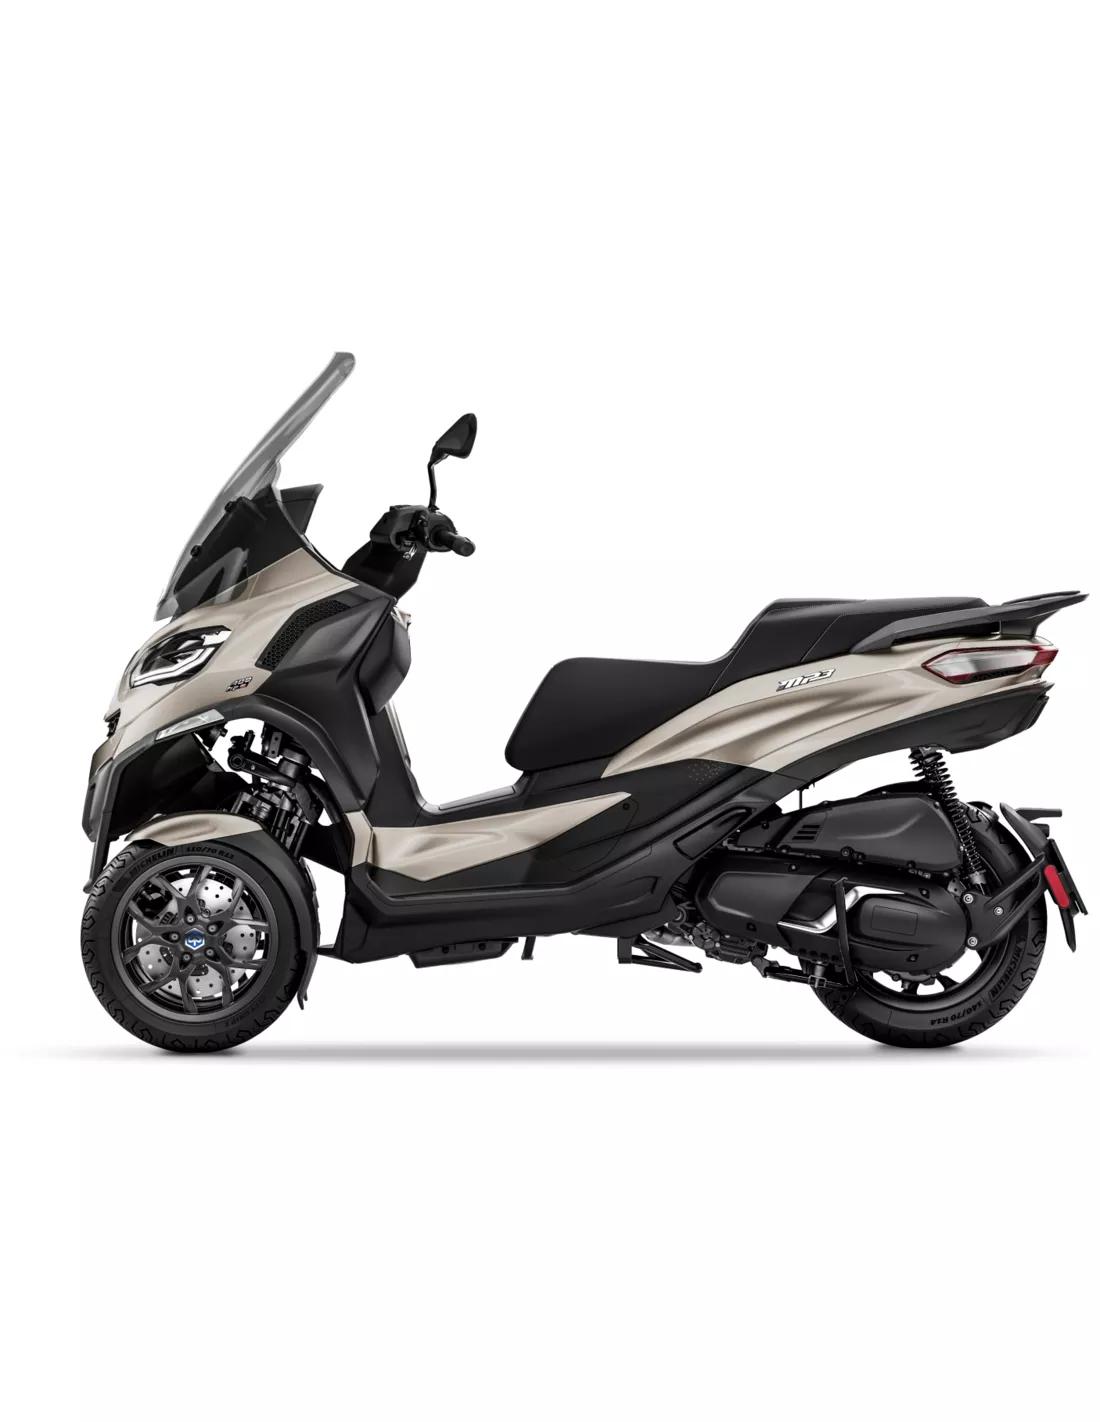 Er is behoefte aan wereld luchthaven PIaggio MP3 400 motorscooter kopen